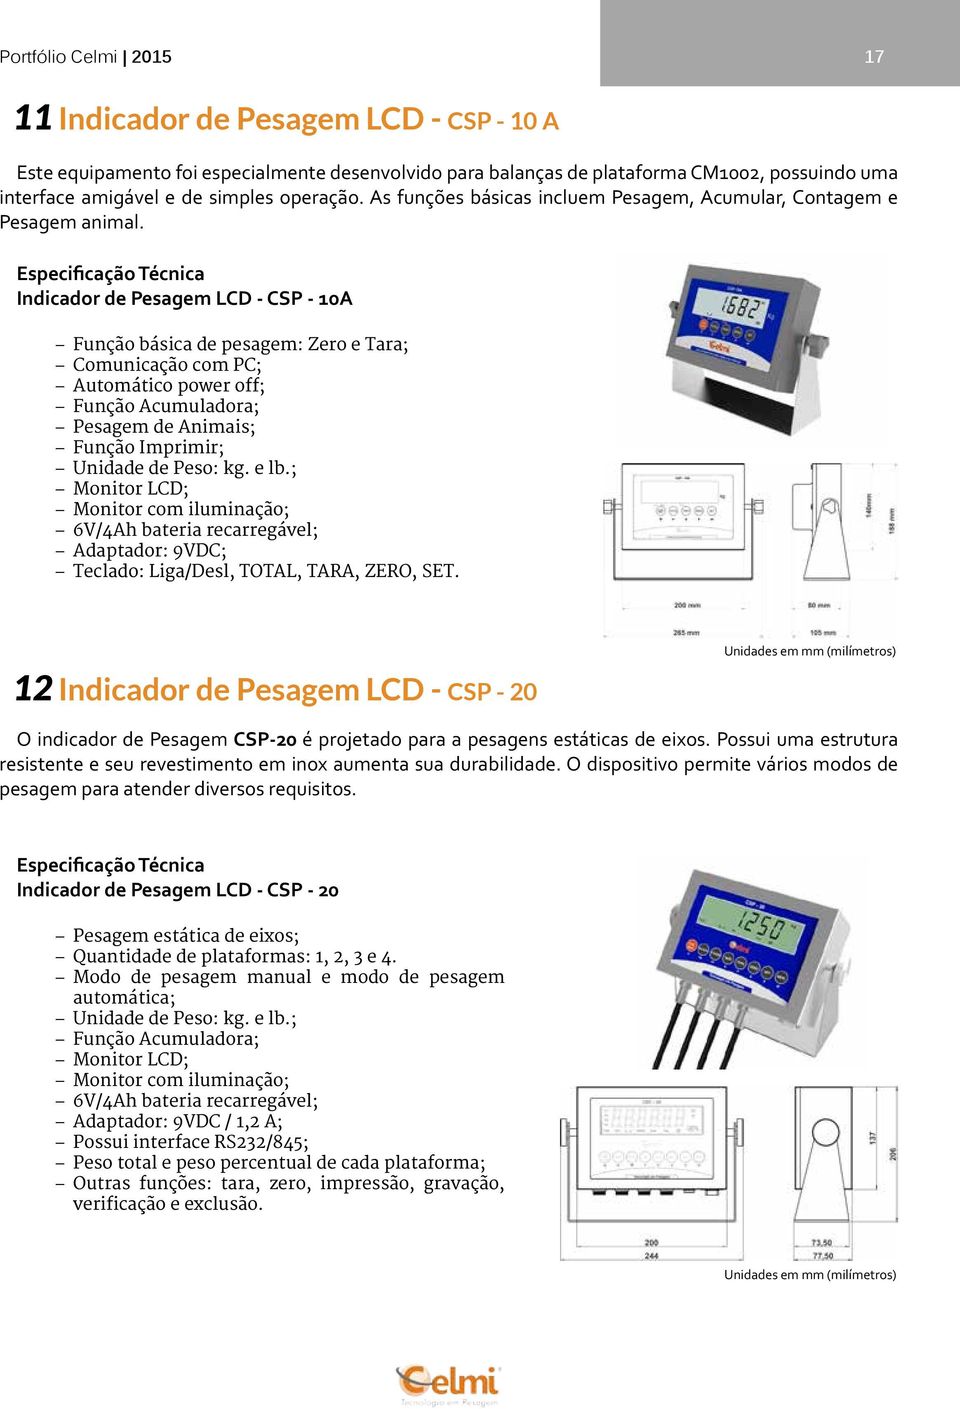 Indicador de Pesagem LCD - CSP - 10A Função básica de pesagem: Zero e Tara; Comunicação com PC; Automático power off; Função Acumuladora; Pesagem de Animais; Função Imprimir; Unidade de Peso: kg.